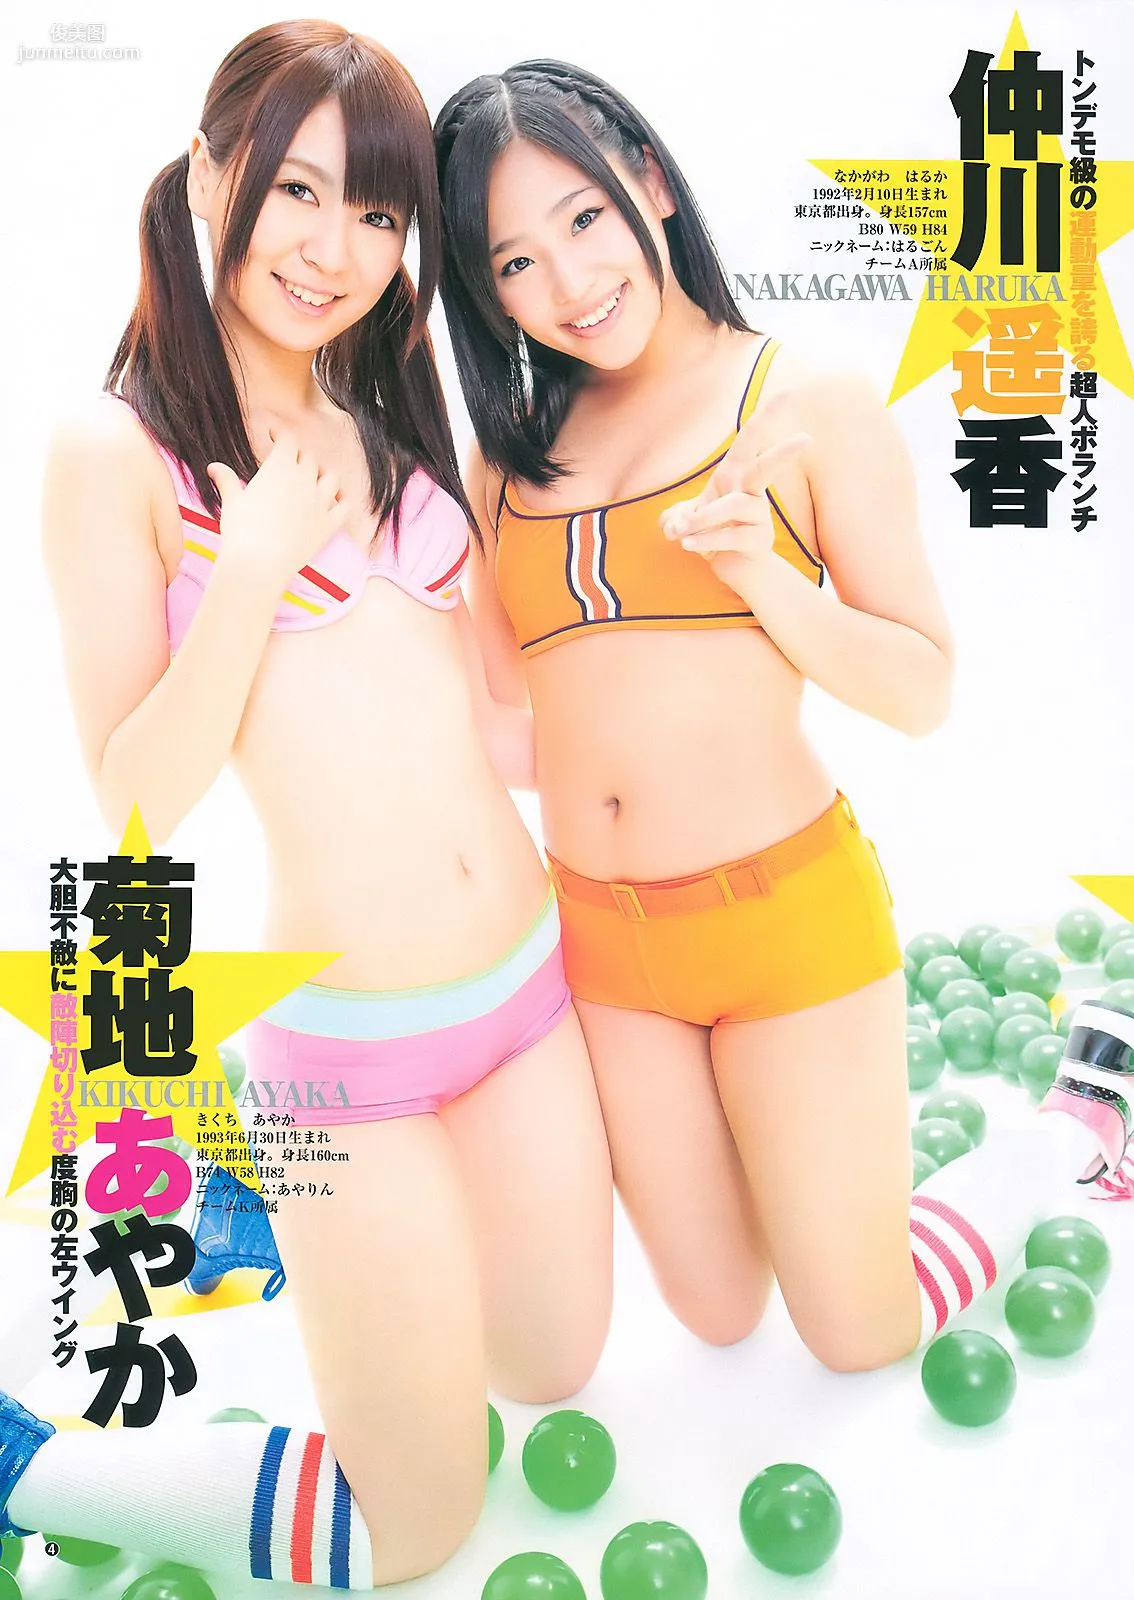 渡り廊下走り隊7 杉ありさ 荻野可鈴 [Weekly Young Jump] 2011年No.10 写真杂志5